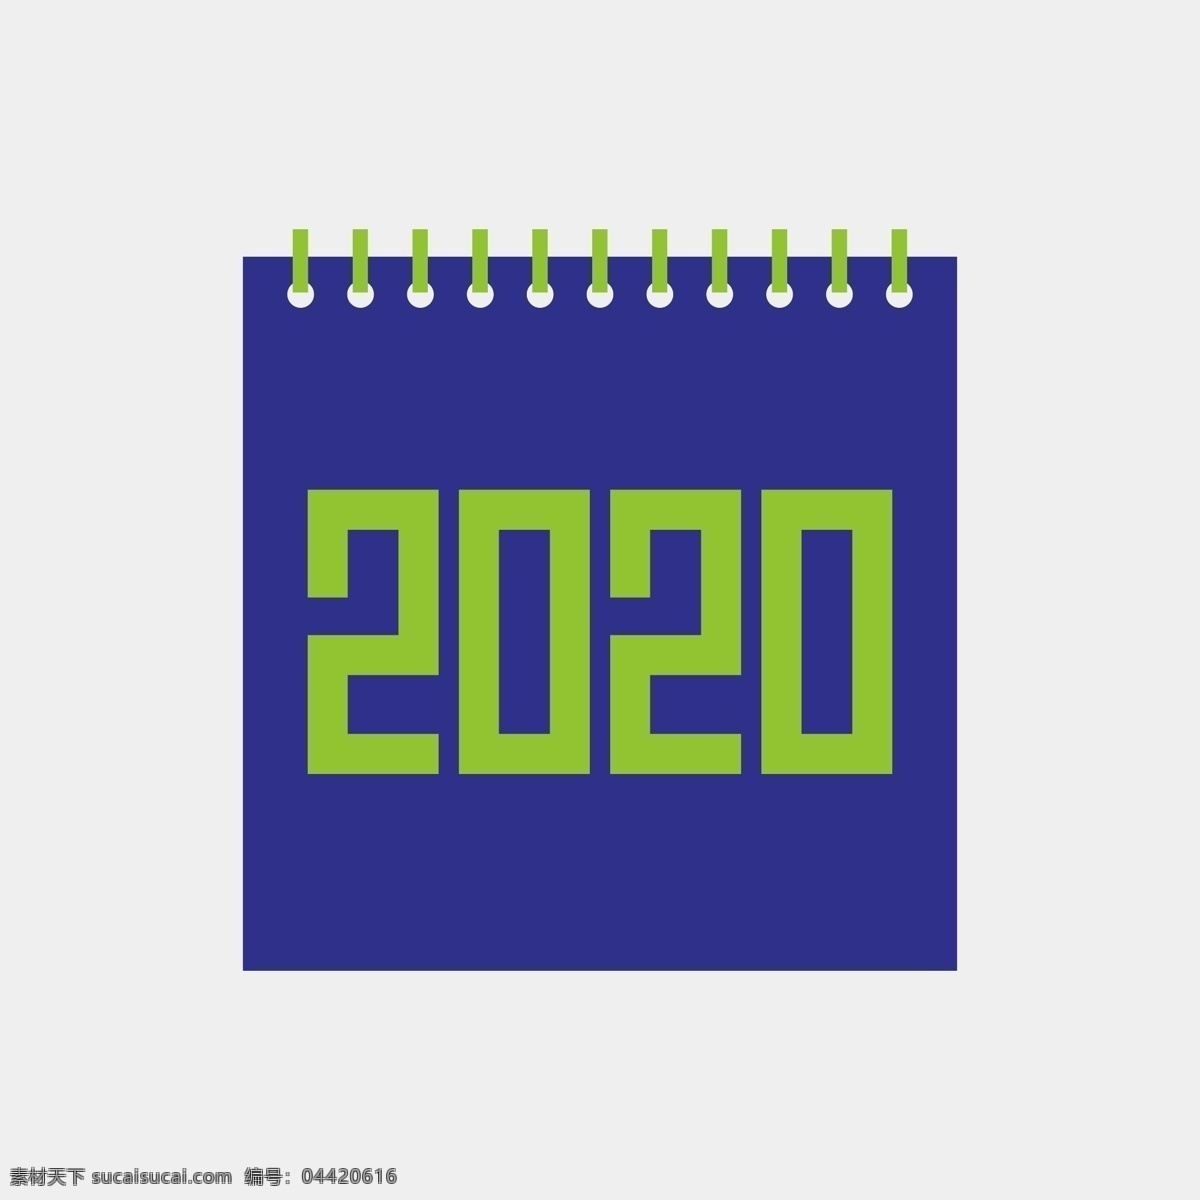 2020年 电商主图 日历字体 海报字体 背景字体 创意海报 创意台历 2020 新年 挂历字体 台历字体 创意数字 数字设计 数字创意 台历数字 包装字体 背景墙字体 画册字体 笔记本字体 电商字体